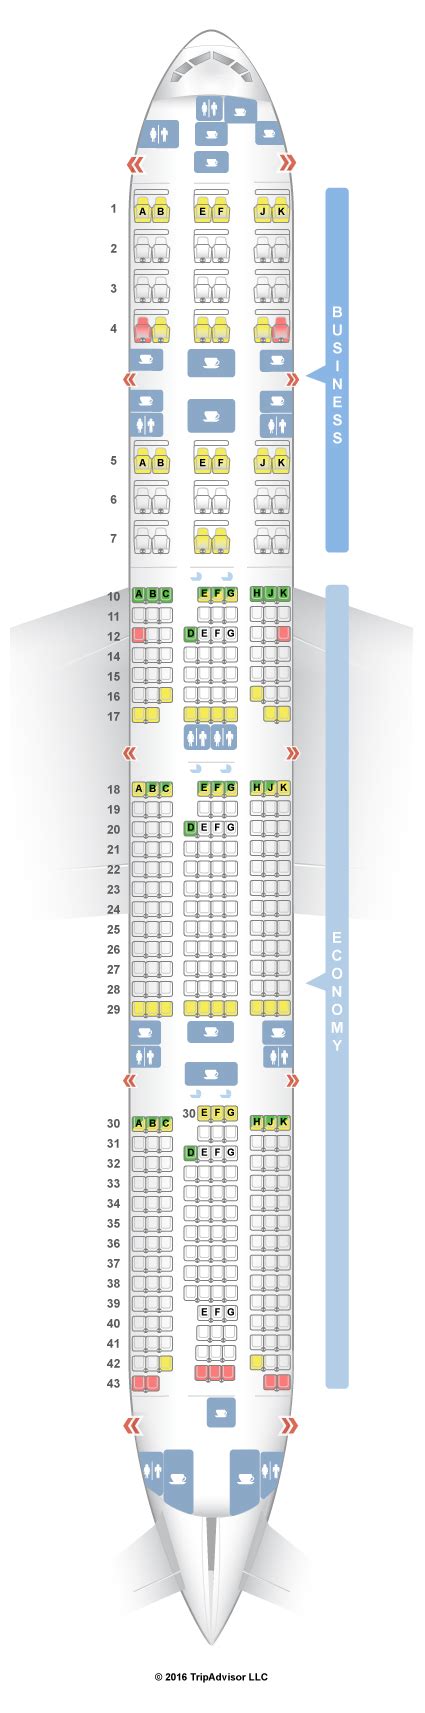 Seatguru Seat Map Qatar Airways Boeing 777 300er 77w V1